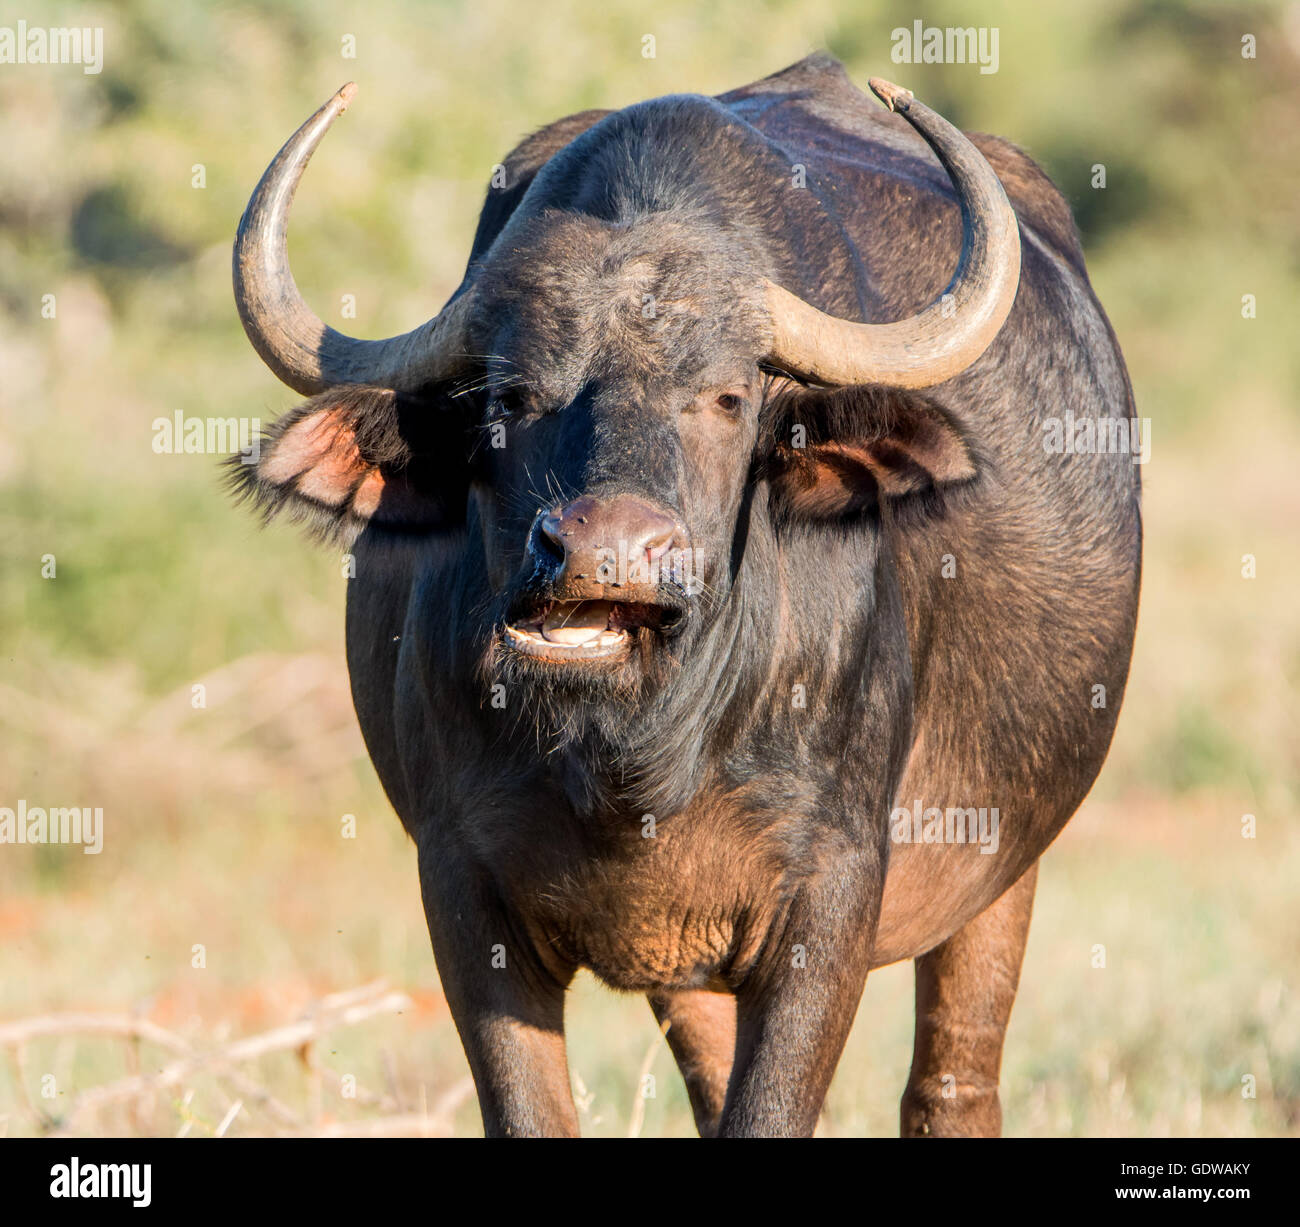 Closeup portrait of an African Buffalo dans le sud de la savane africaine Banque D'Images